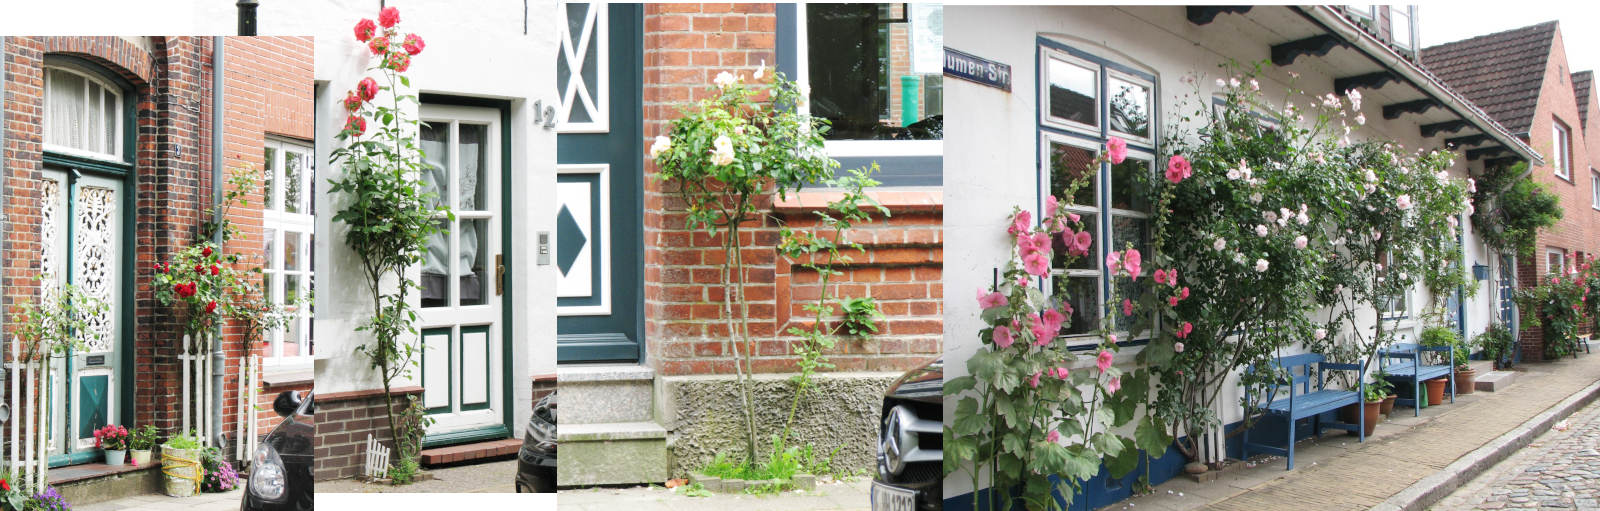 Montage aus drei spektakulären Szenen mit Blumen vor Haustüren